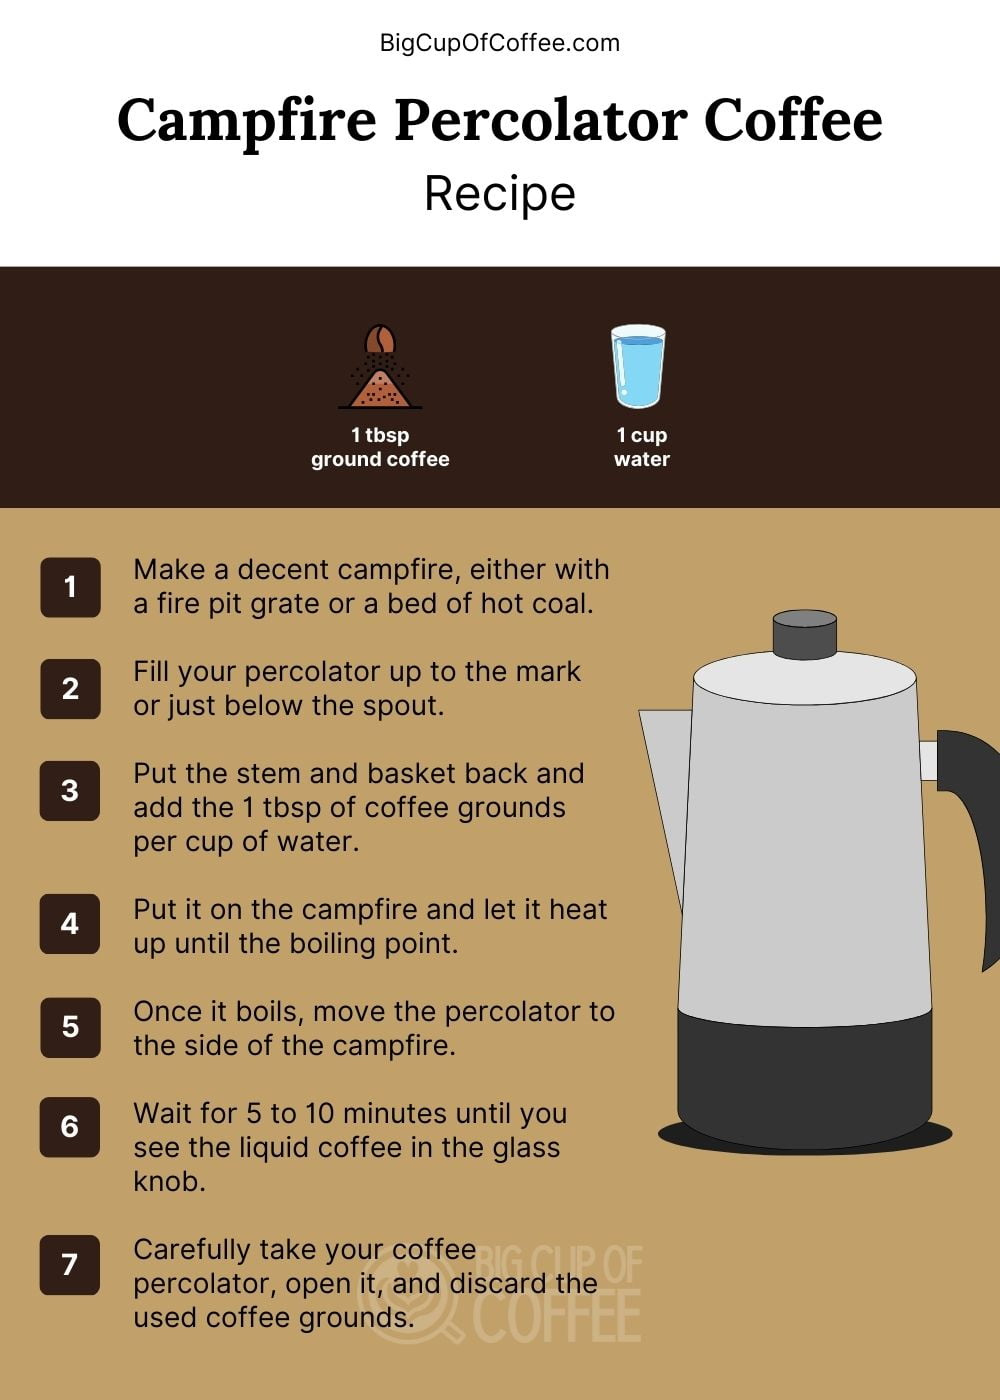 Campfire Percolator Coffee Recipe